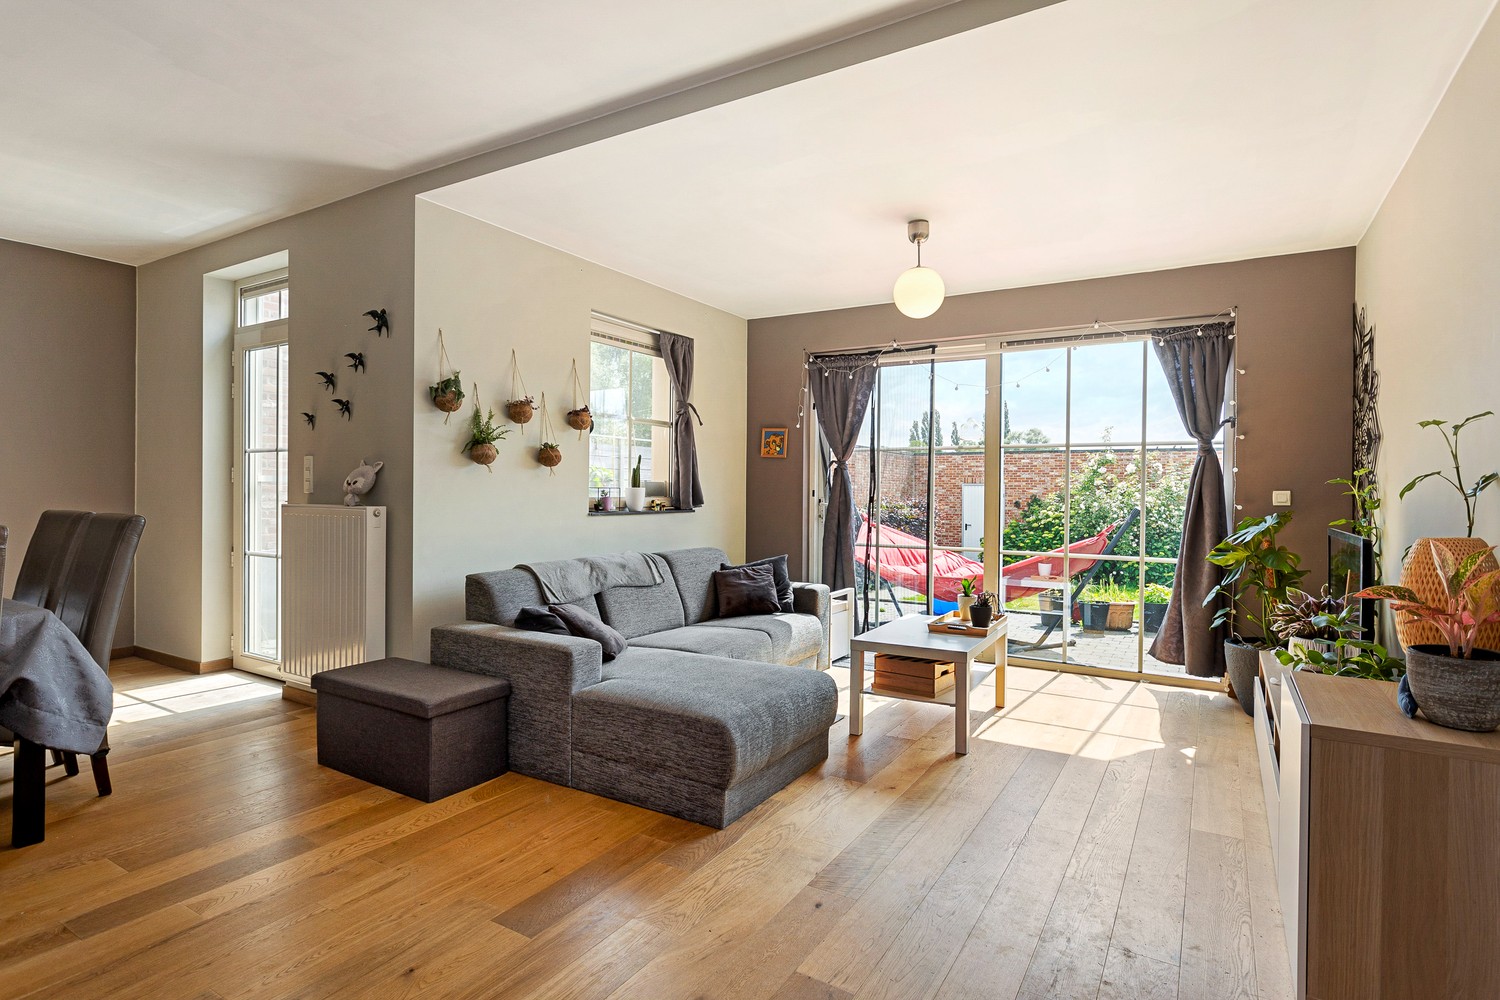 Zeer mooi gelijkvloers appartement met zonnige tuin, 2 slaapkamers & garage in Grobbendonk! afbeelding 3